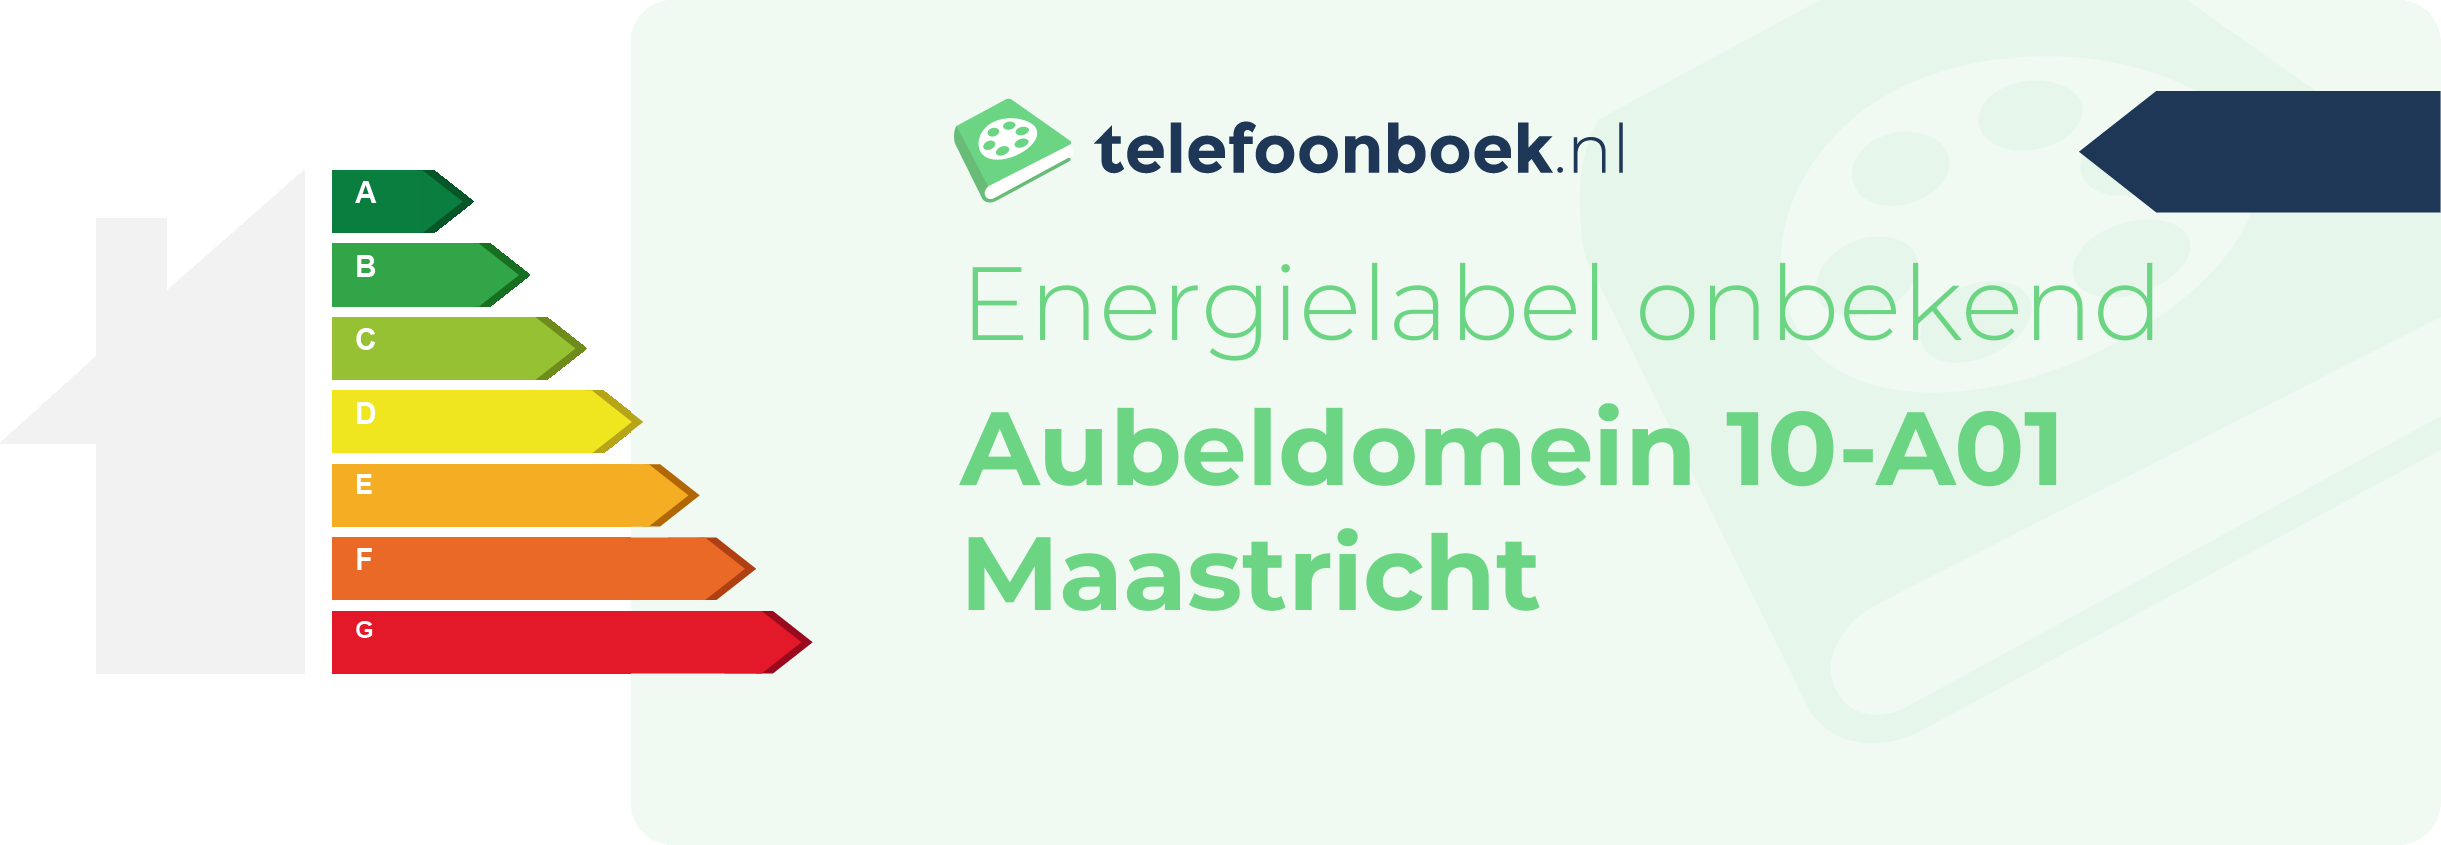 Energielabel Aubeldomein 10-A01 Maastricht